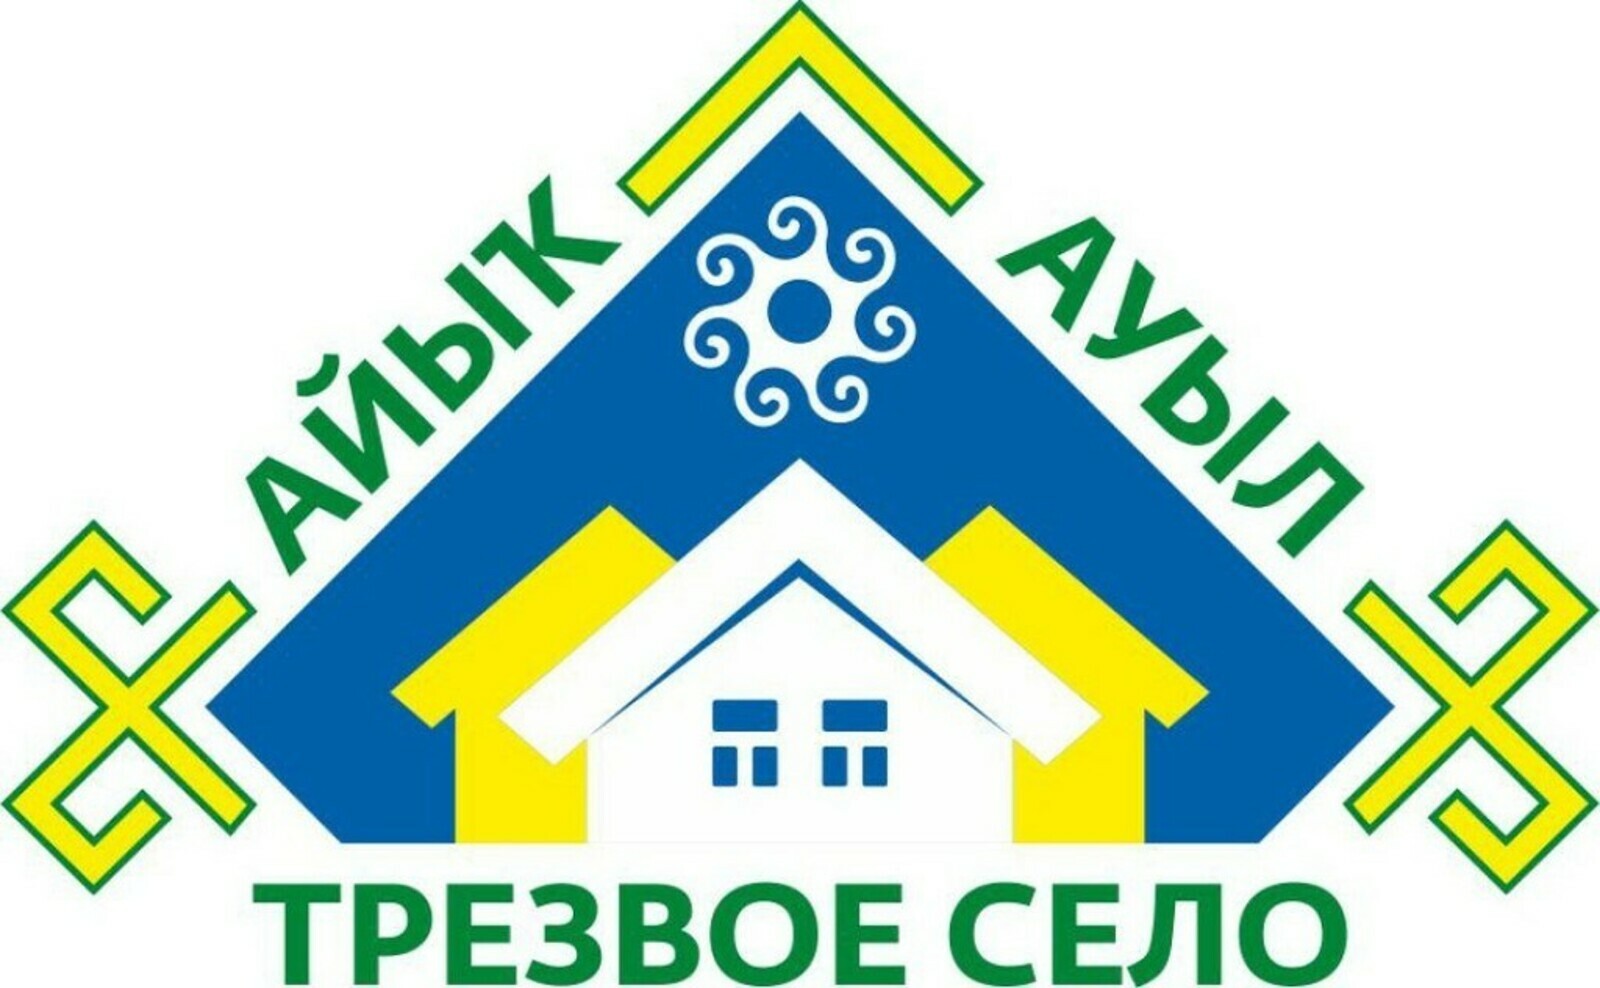 14 населённых пунктов Краснокамского района участвуют на районном этапе в конкурсе "Трезвое село"